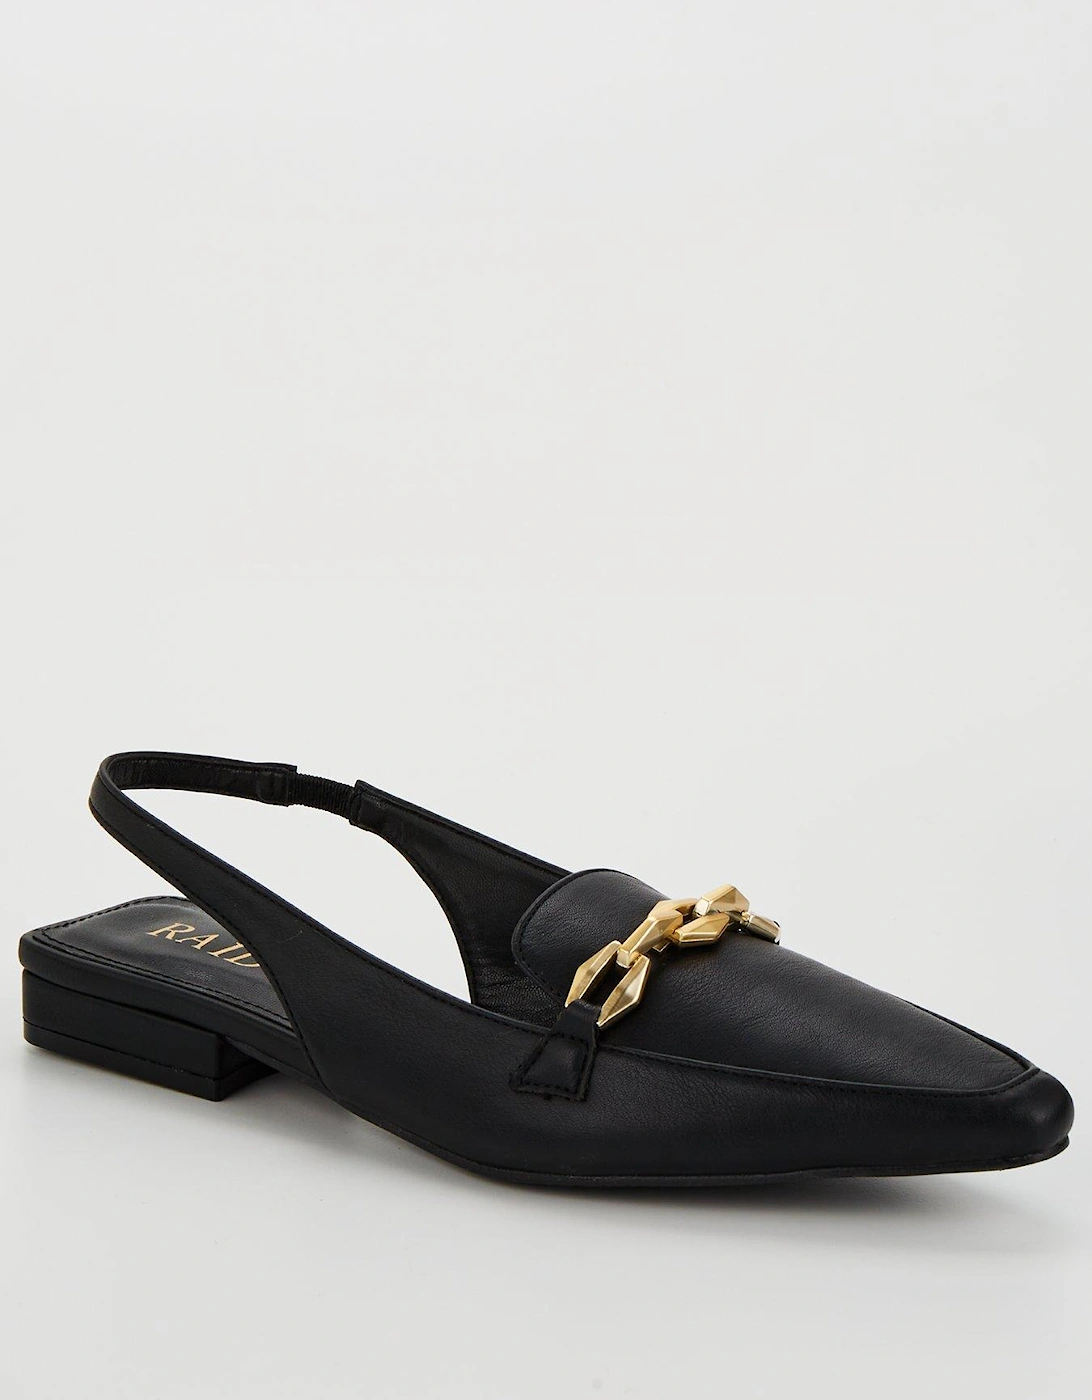 Koral Almond Toe Sling Bag Shoes - Black, 3 of 2